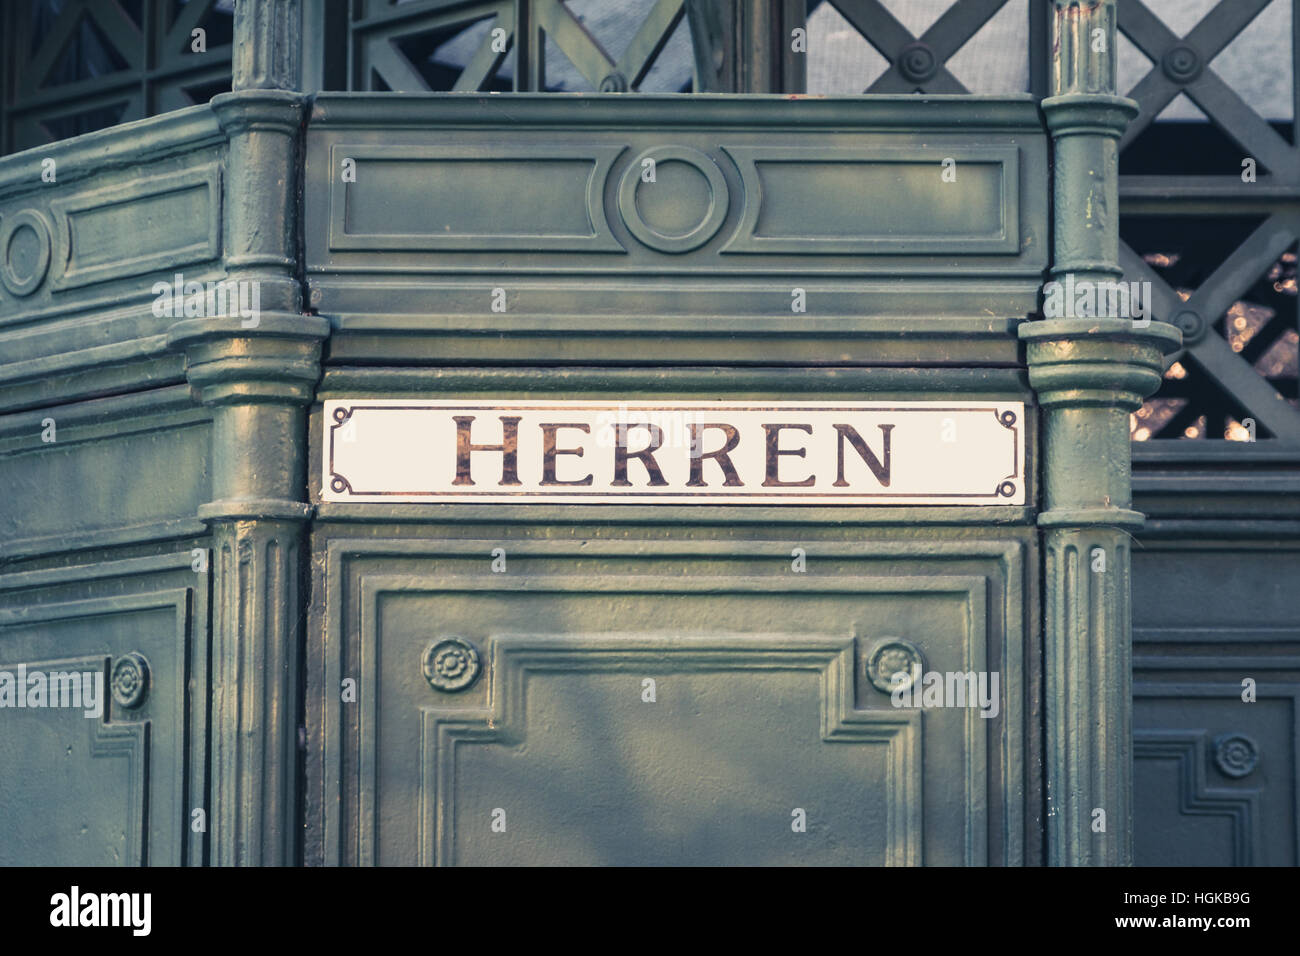 La parola tedesca "Herren" (uomini) alla storica toilette pubblica, Foto Stock